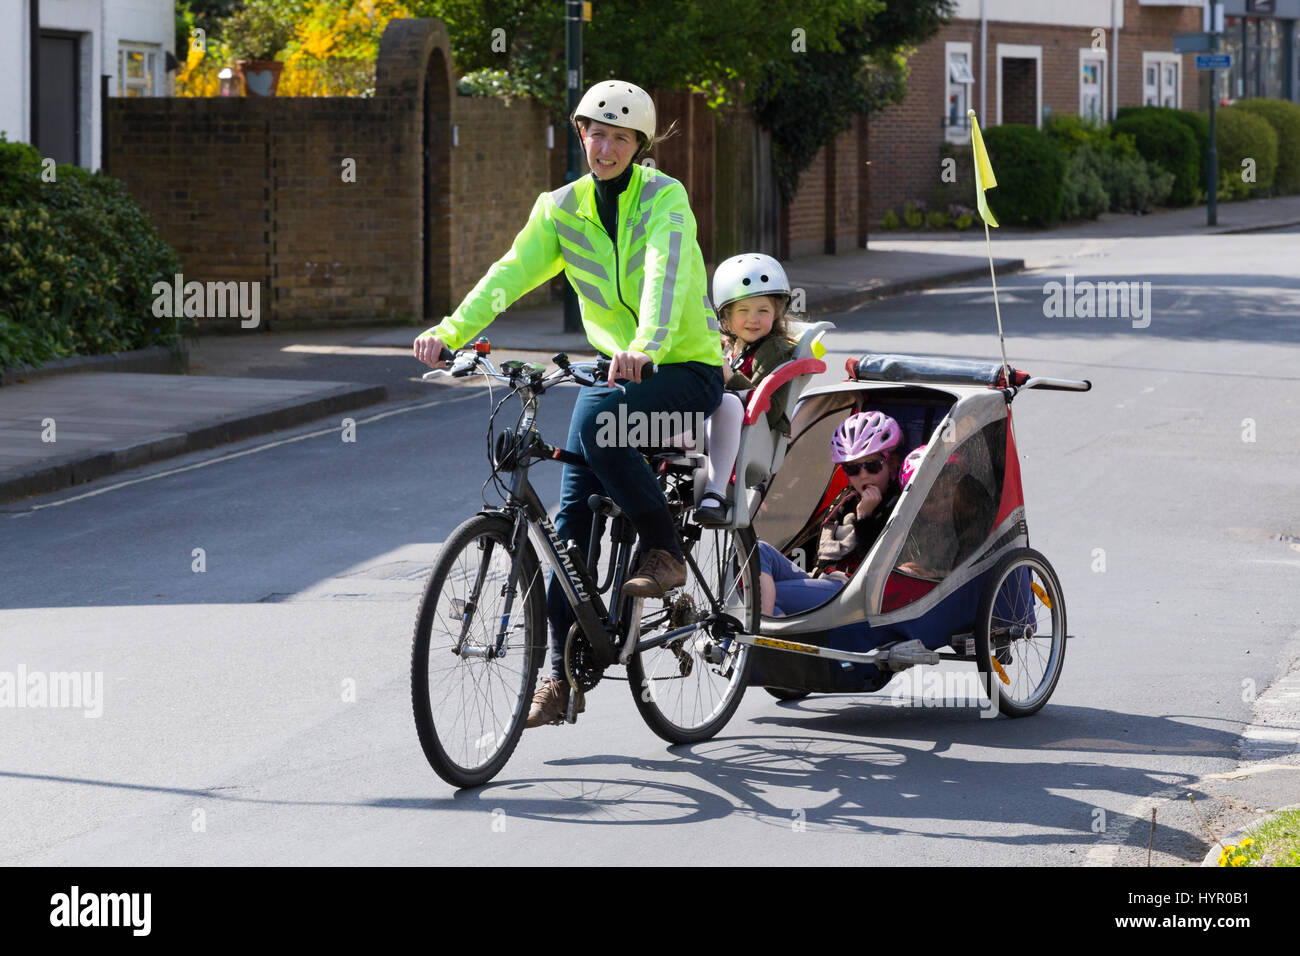 Frau Radfahrer auf Bike / Fahrrad mit + 3 Kinder; Co-Pilot Kindersitz mit  Helm & Abschleppen Zyklus Chariot Anhänger mit zwei / 2 Kinder mit Helmen.  VEREINIGTES KÖNIGREICH Stockfotografie - Alamy